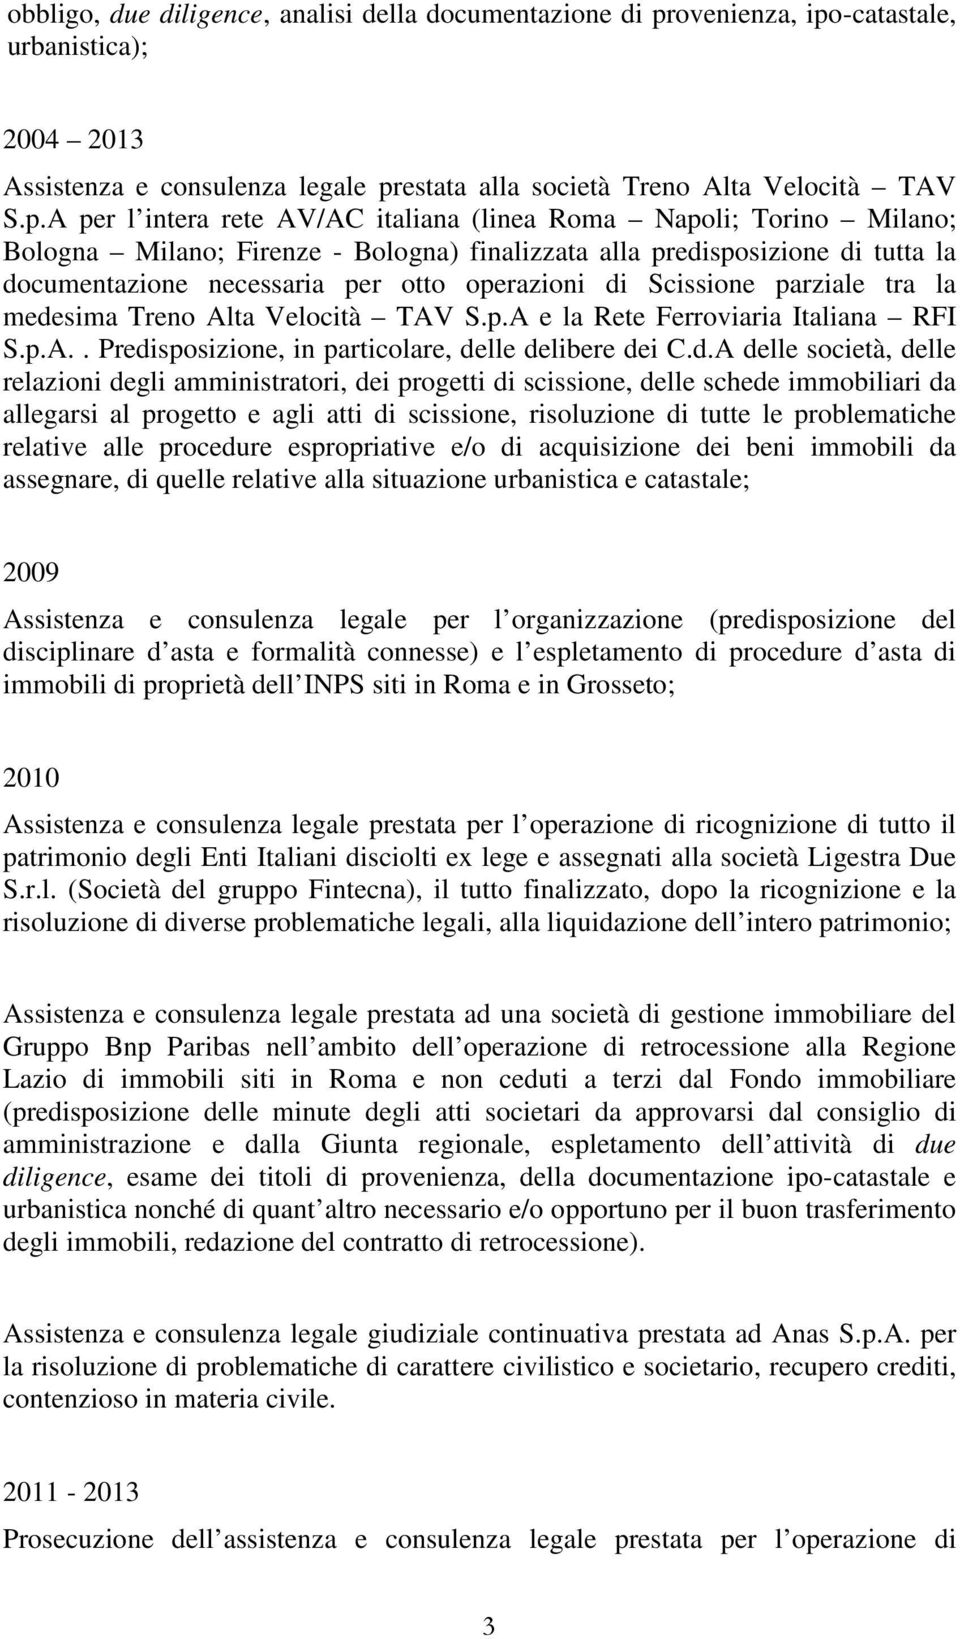 -catastale, urbanistica); 2004 2013 Assistenza e consulenza legale pr